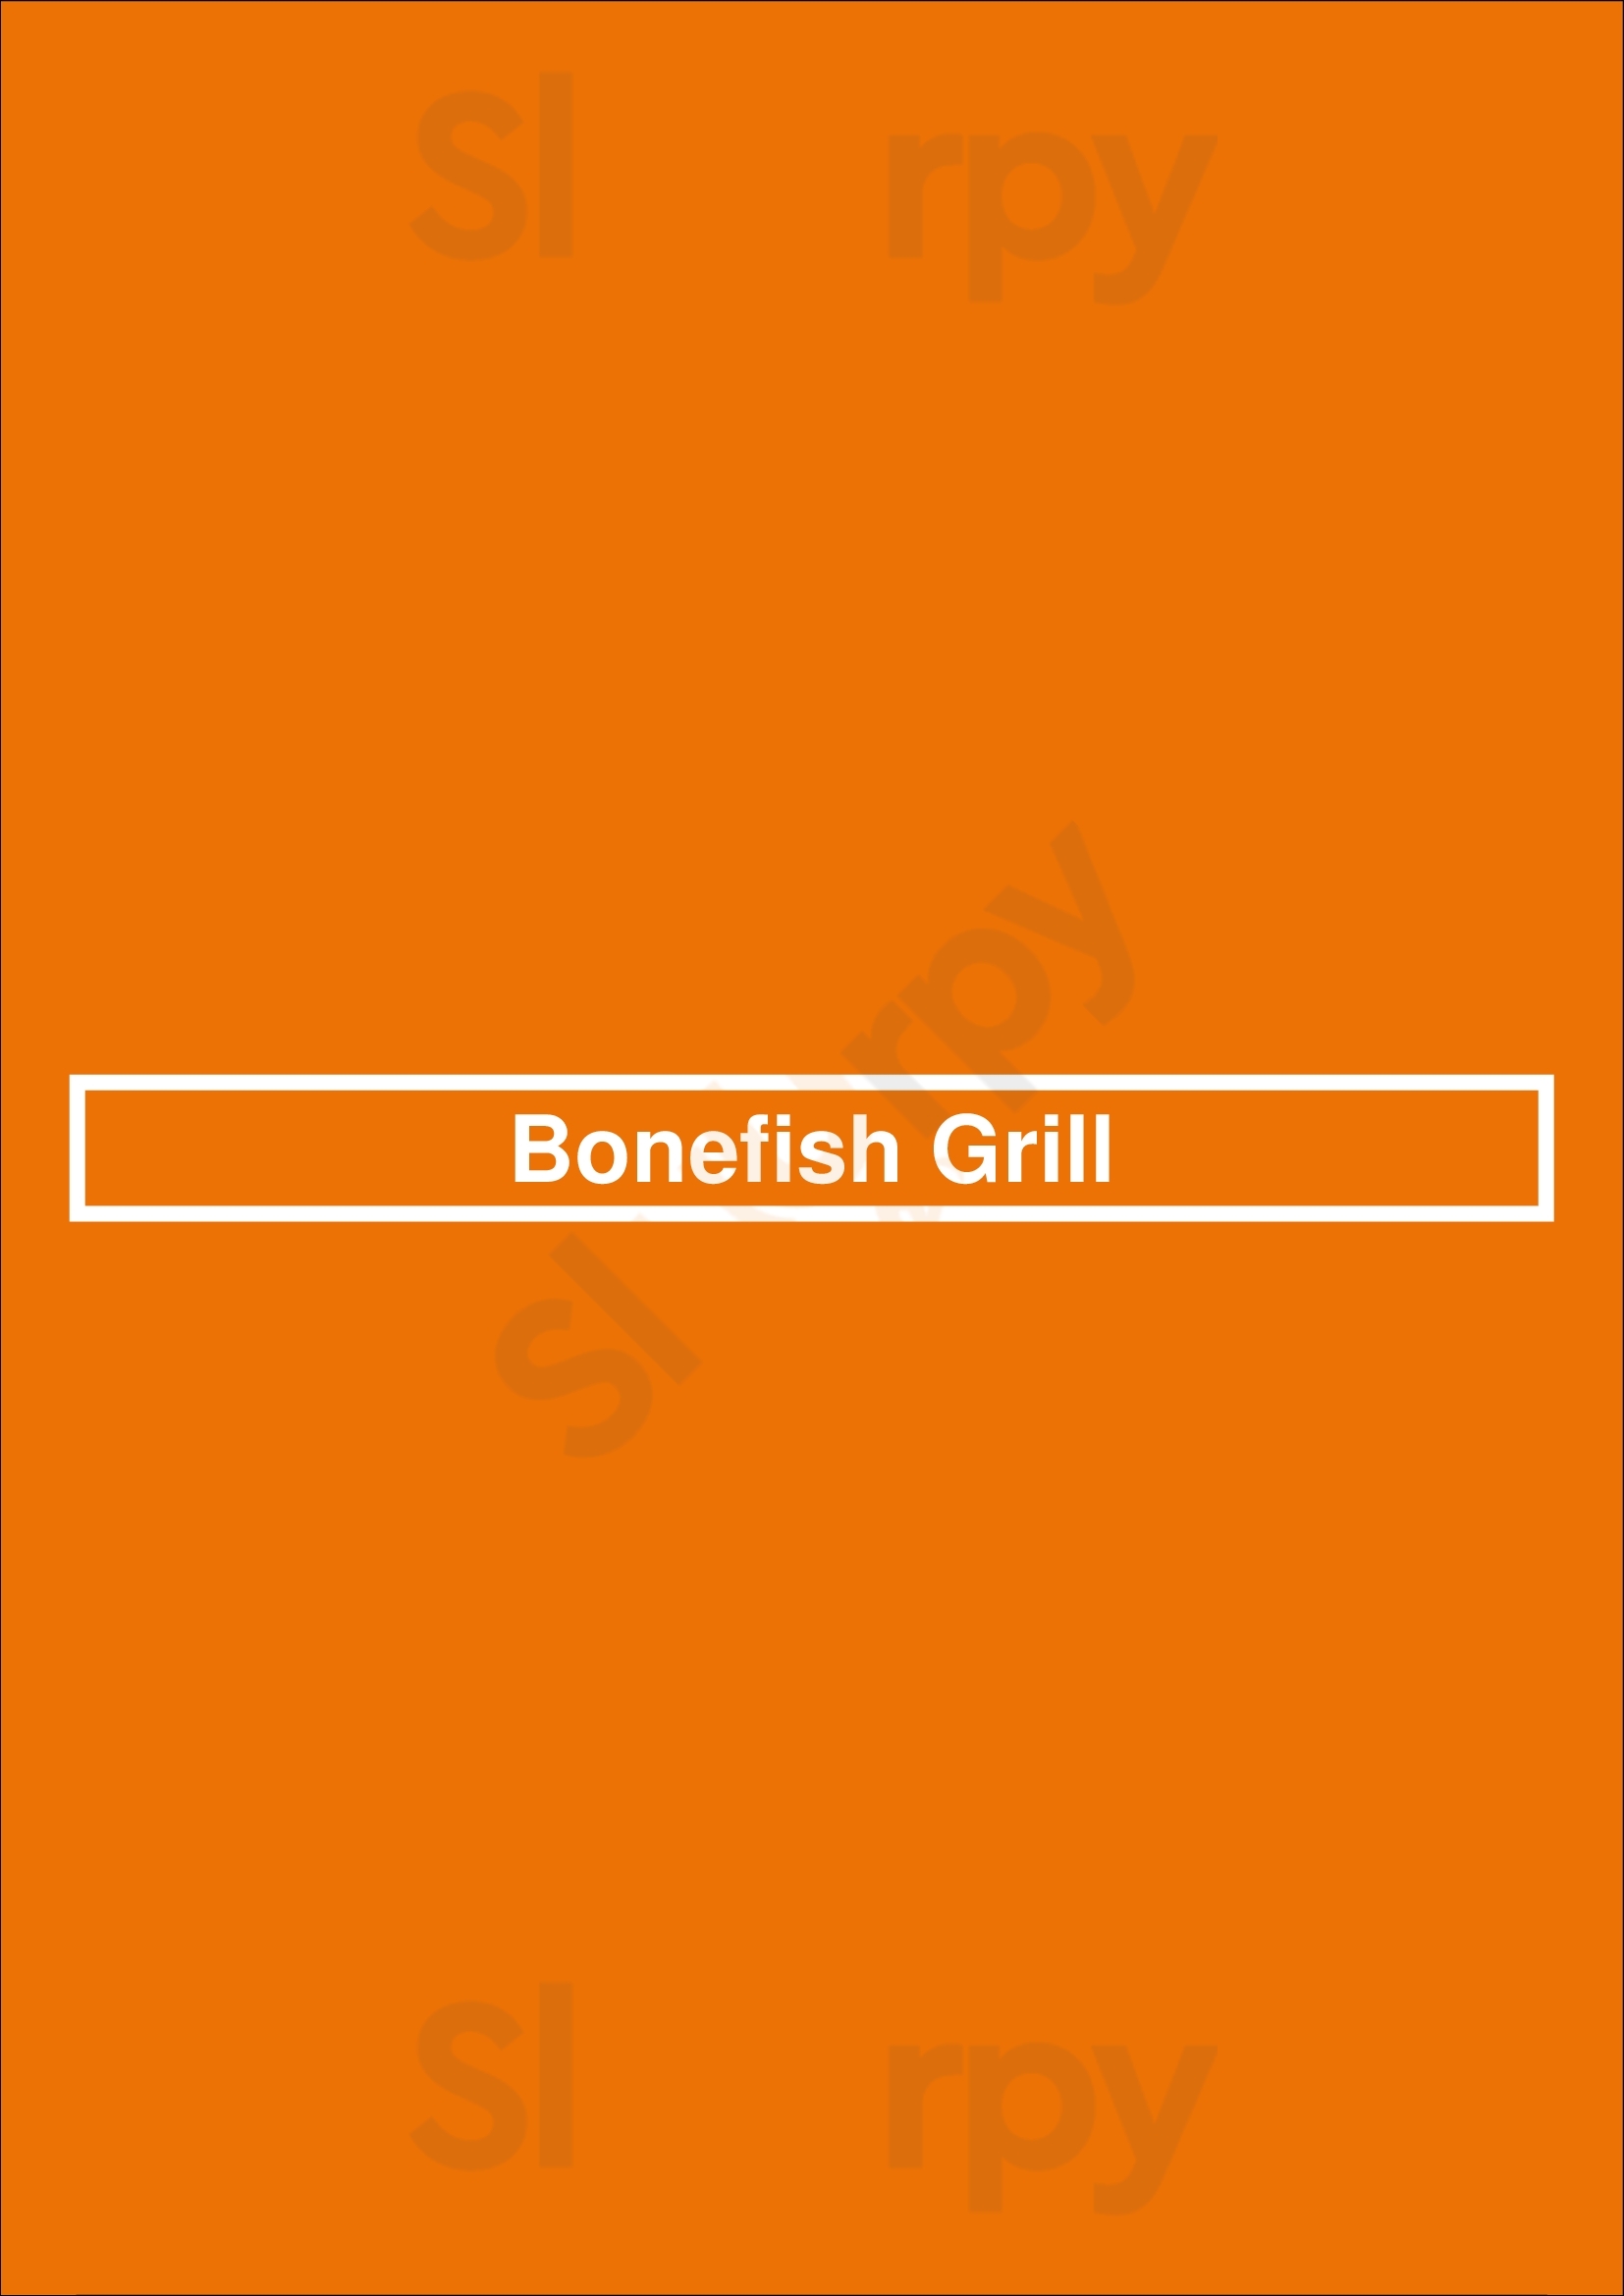 Bonefish Grill Cincinnati Menu - 1